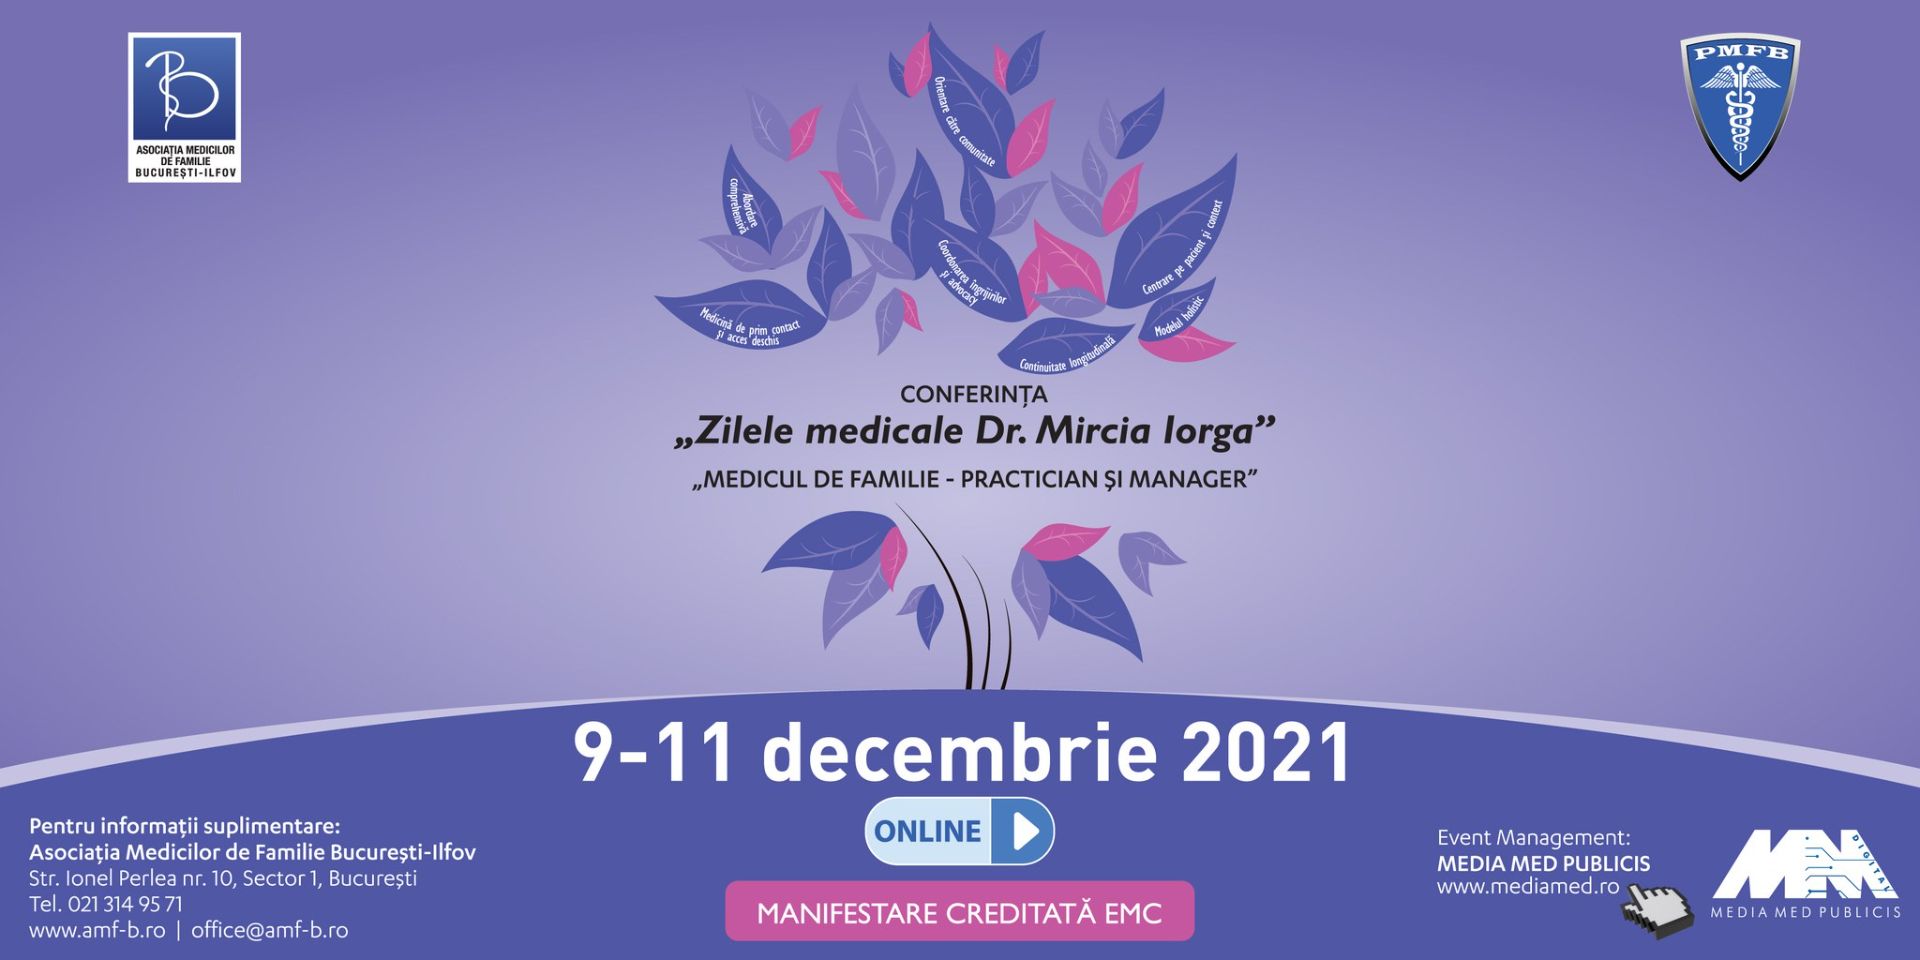 Conferința „Zilele medicale Dr. Mircia Iorga” are loc în decembrie